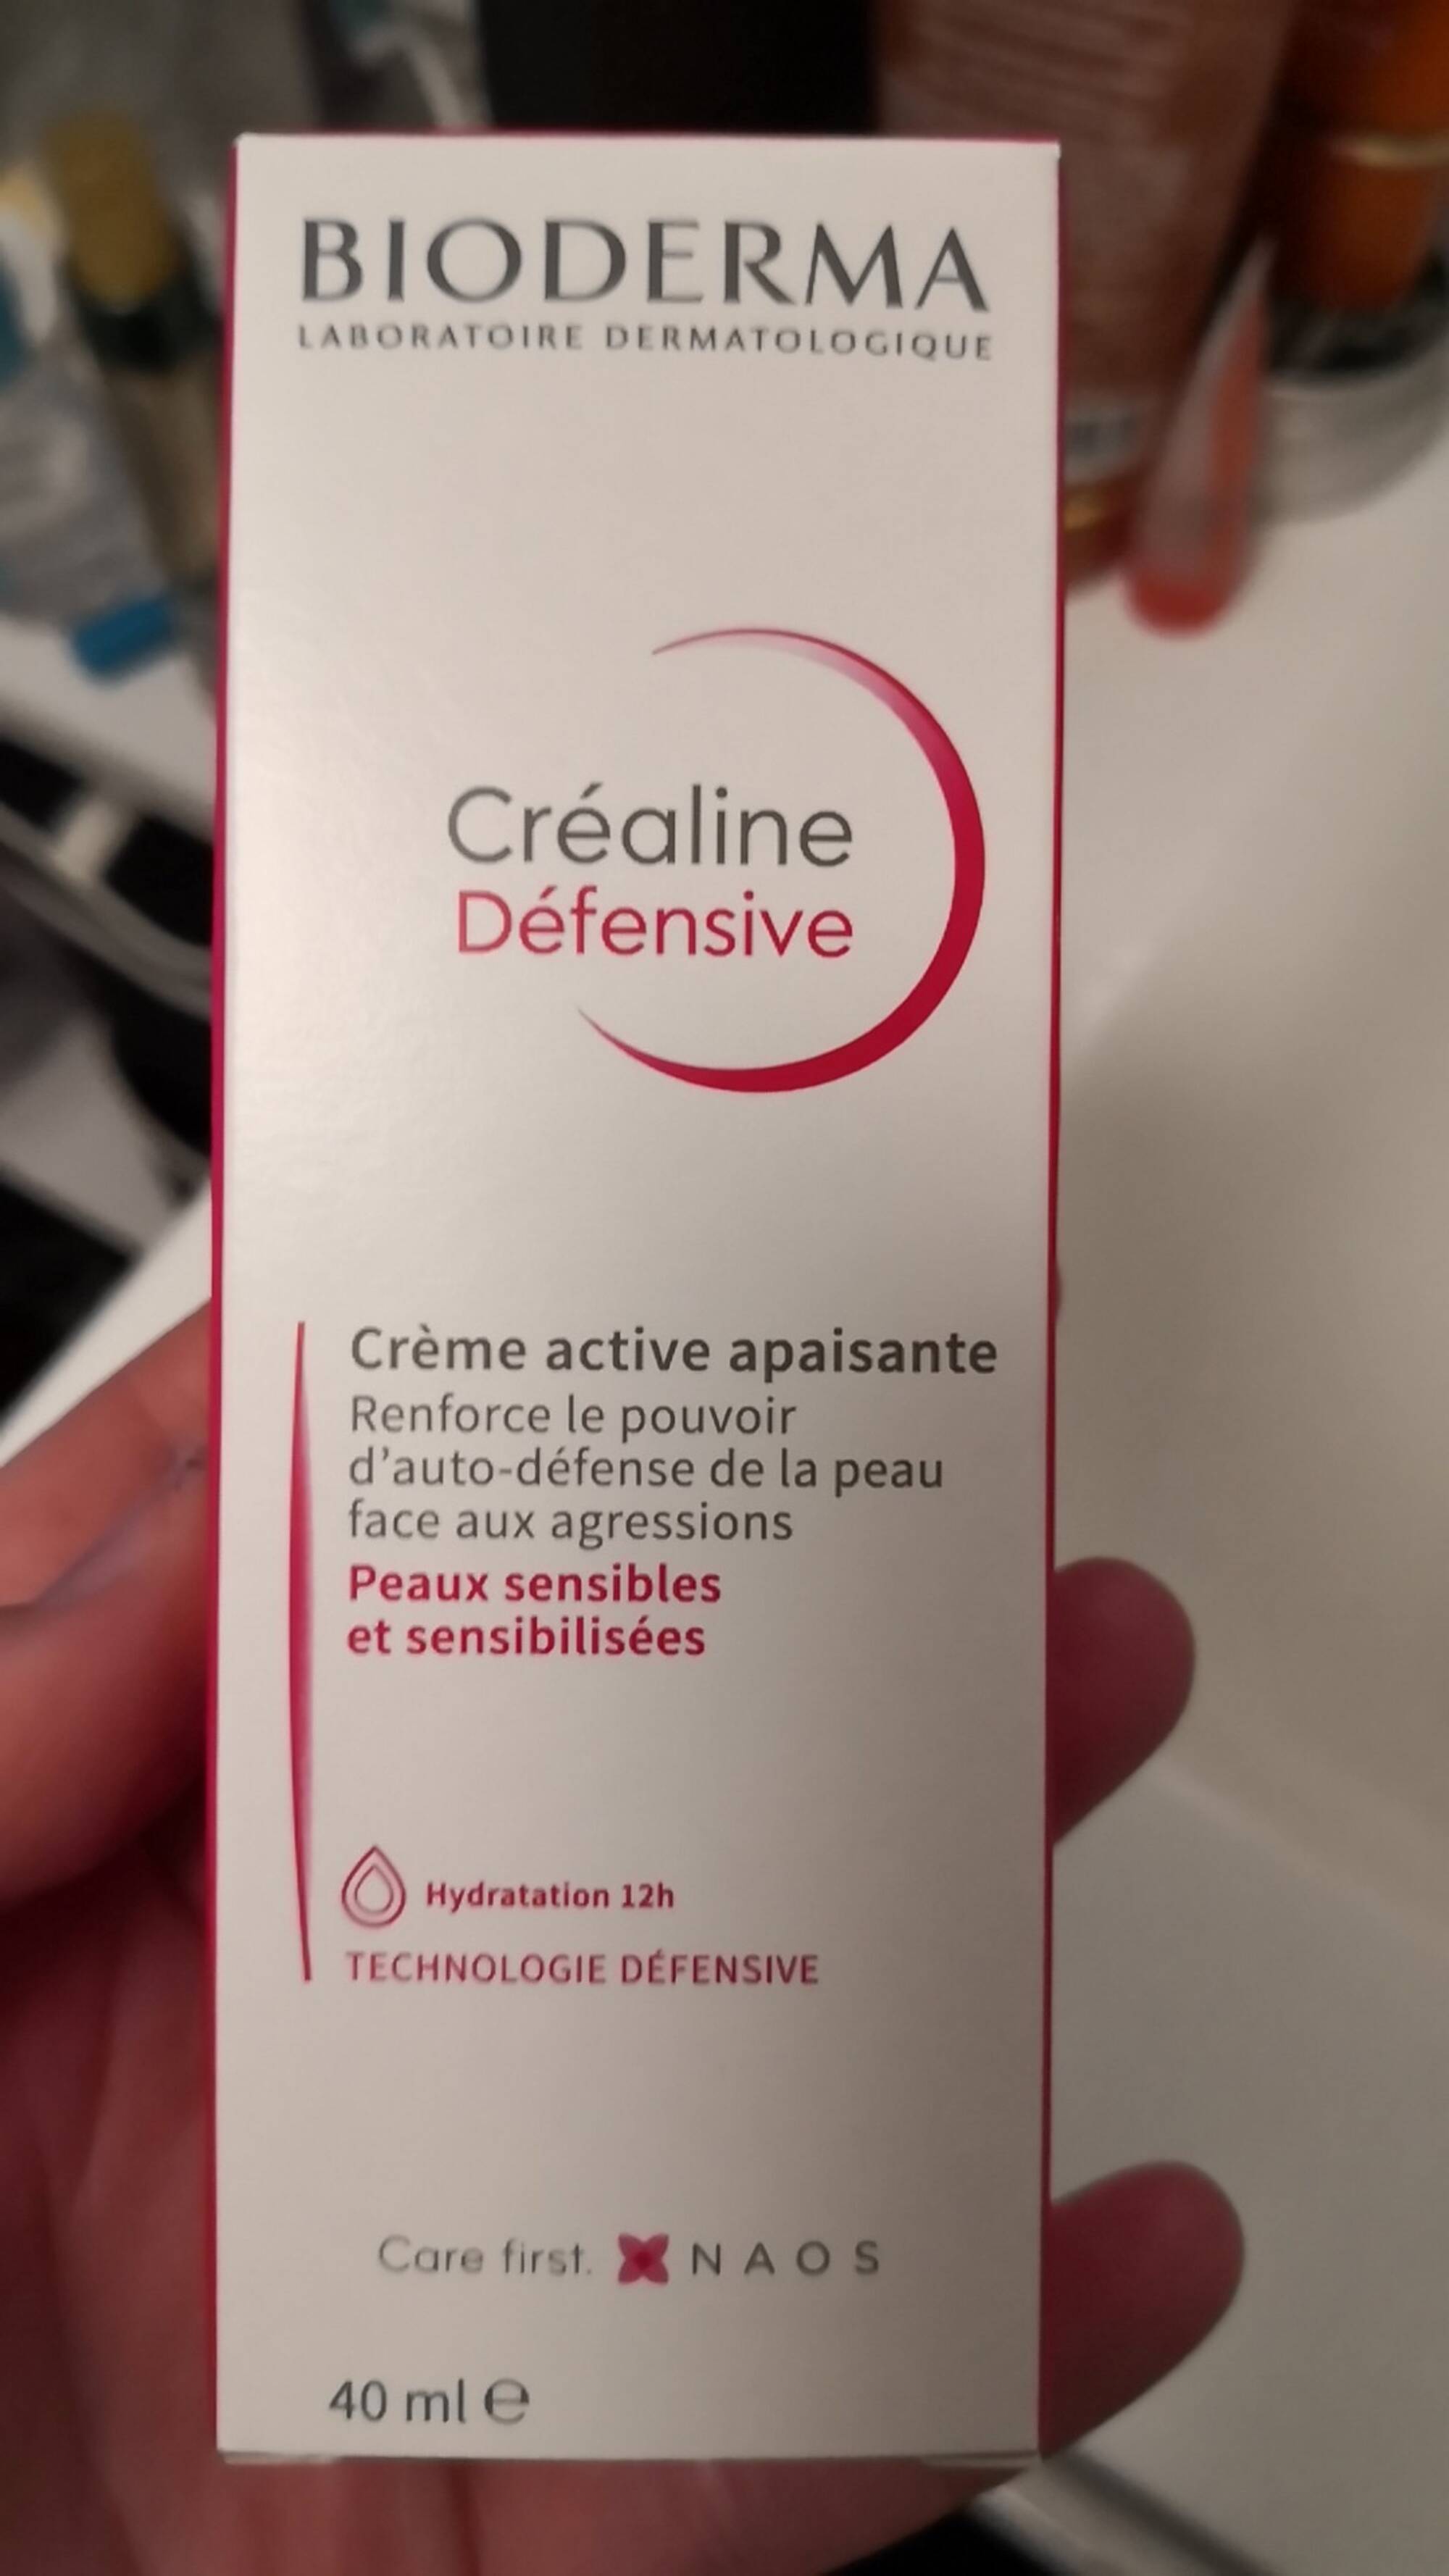 BIODERMA - Créaline défensive - Crème active apaisante